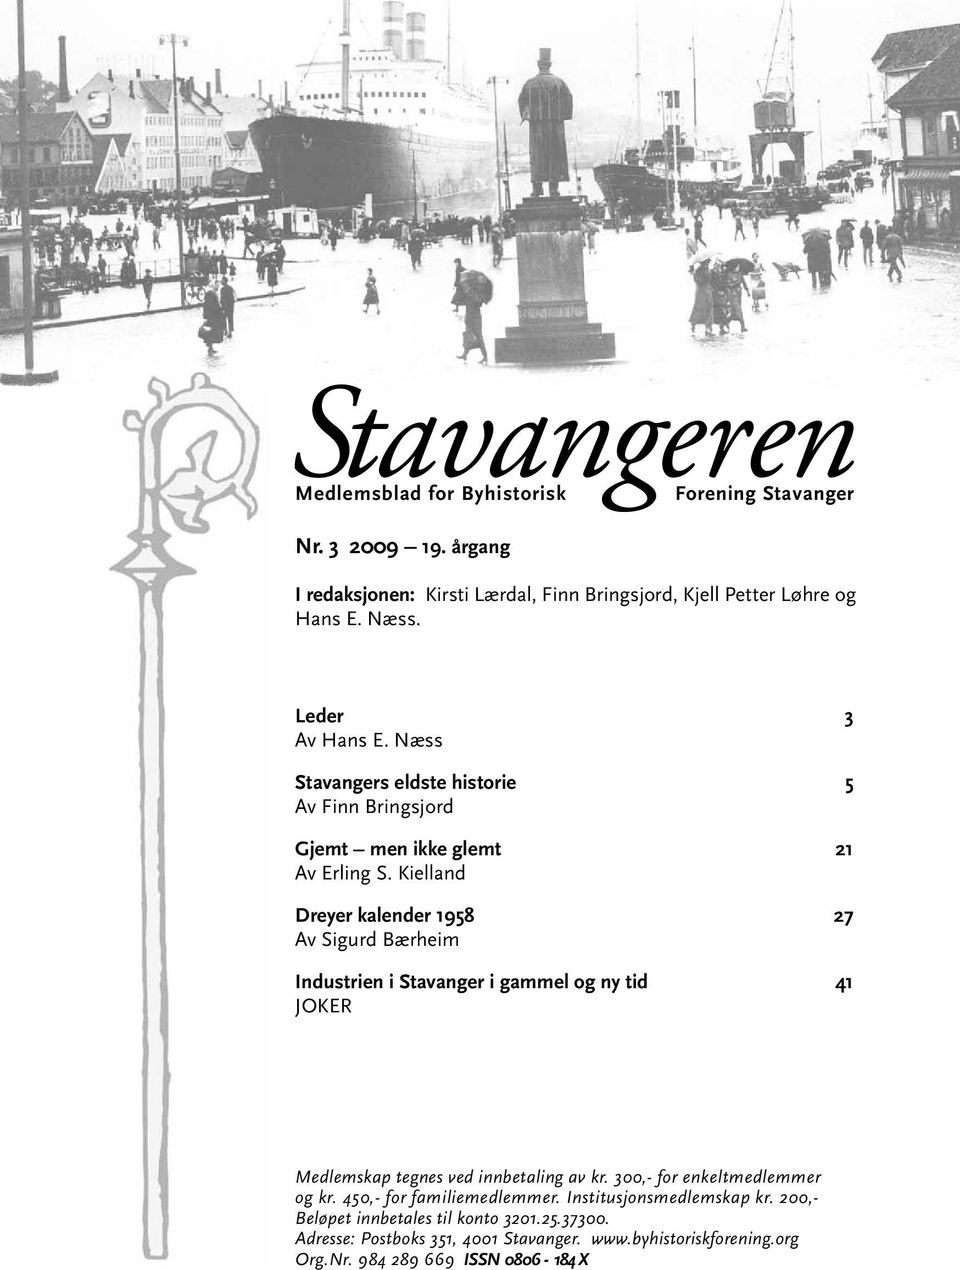 Kielland Dreyer kalender 1958 27 Av Sigurd Bærheim Industrien i Stavanger i gammel og ny tid 41 JOKER Medlemskap tegnes ved innbetaling av kr.